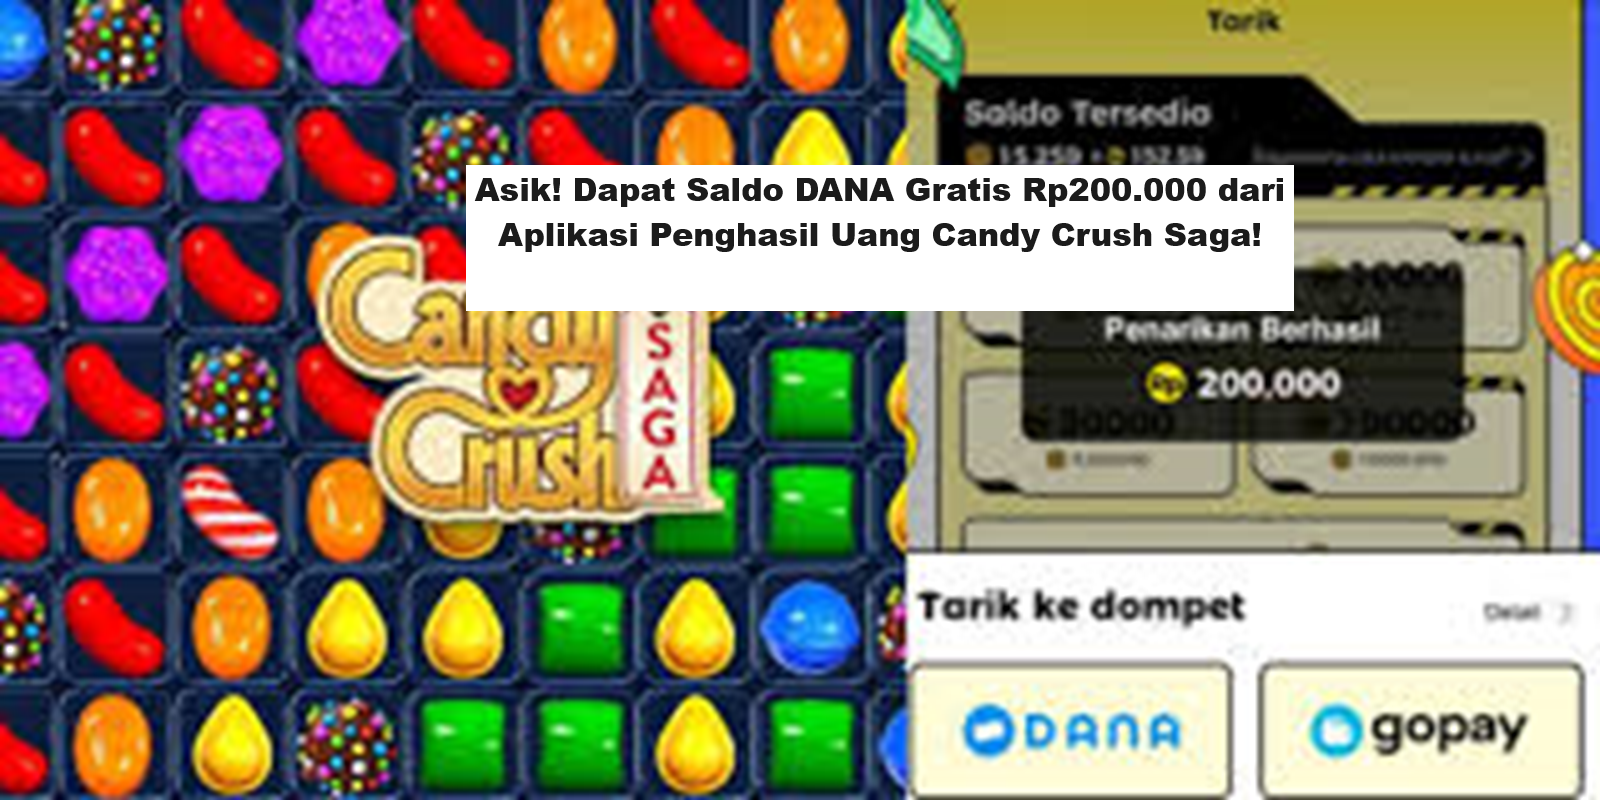 Asik! Dapat Saldo DANA Gratis Rp200.000 dari Aplikasi Penghasil Uang Candy Crush Saga!